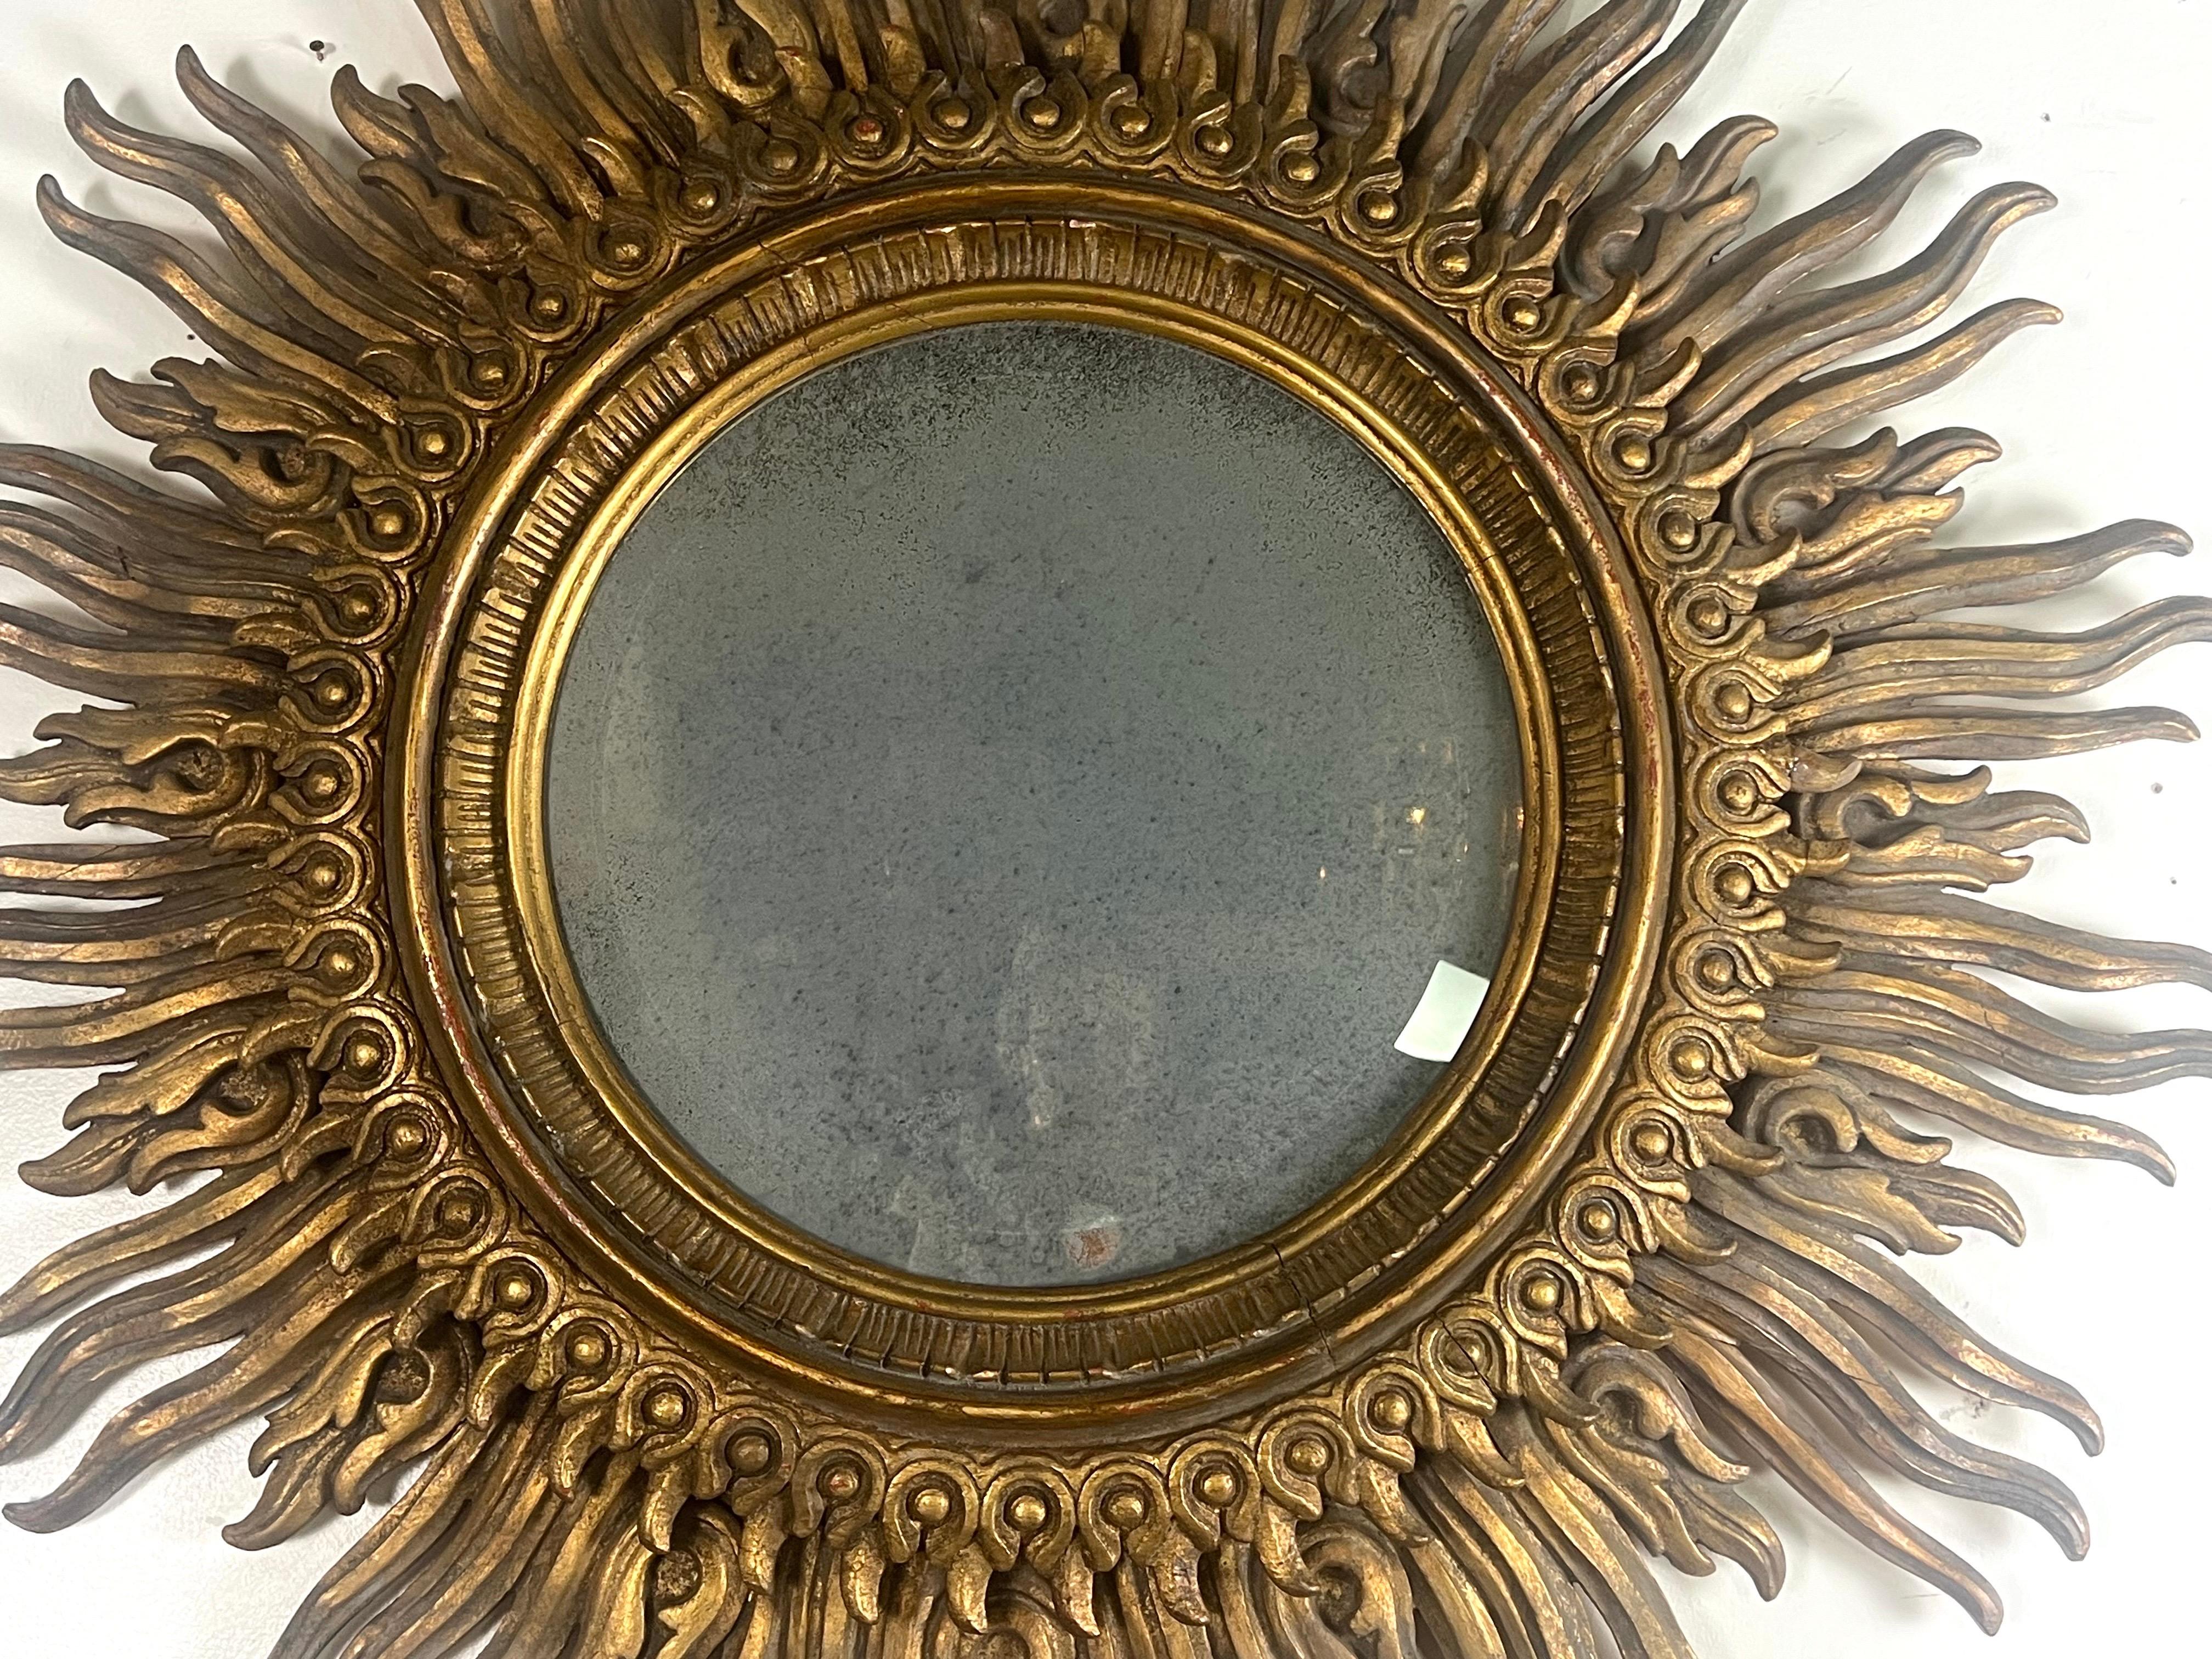 Ce miroir italien en bois doré, de taille monumentale, est une pièce exquise qui témoigne de la richesse et de l'art de l'artisanat italien.  Le miroir est doté d'un panneau central en verre magnifiquement antiqué, ce qui lui confère un charme